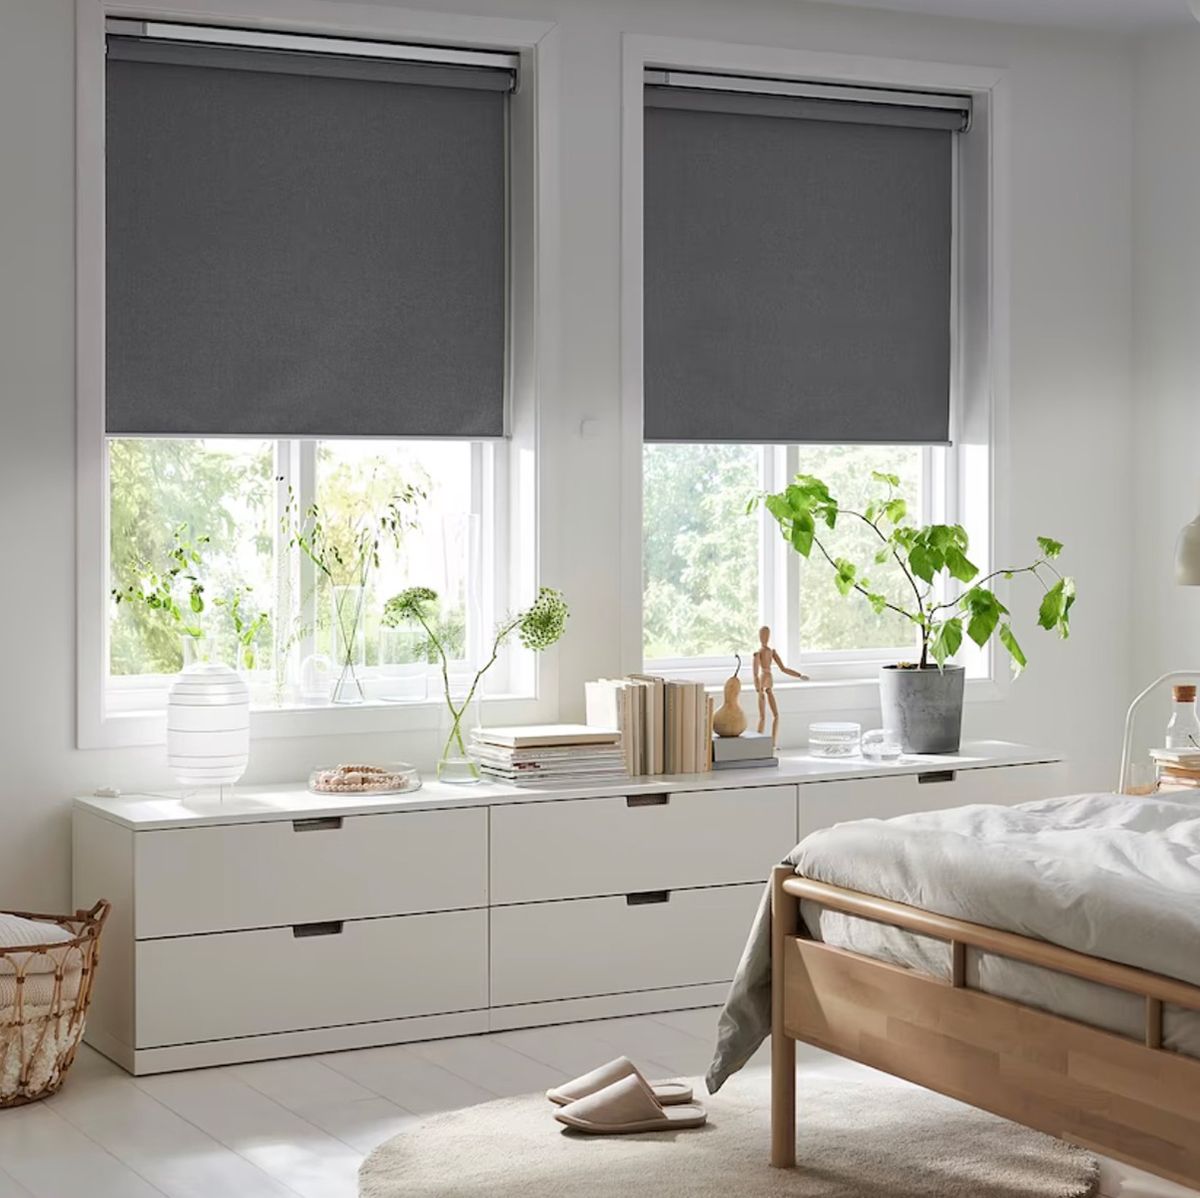 Decorar con cortinas: cómo ahorrar en calefacción - IKEA